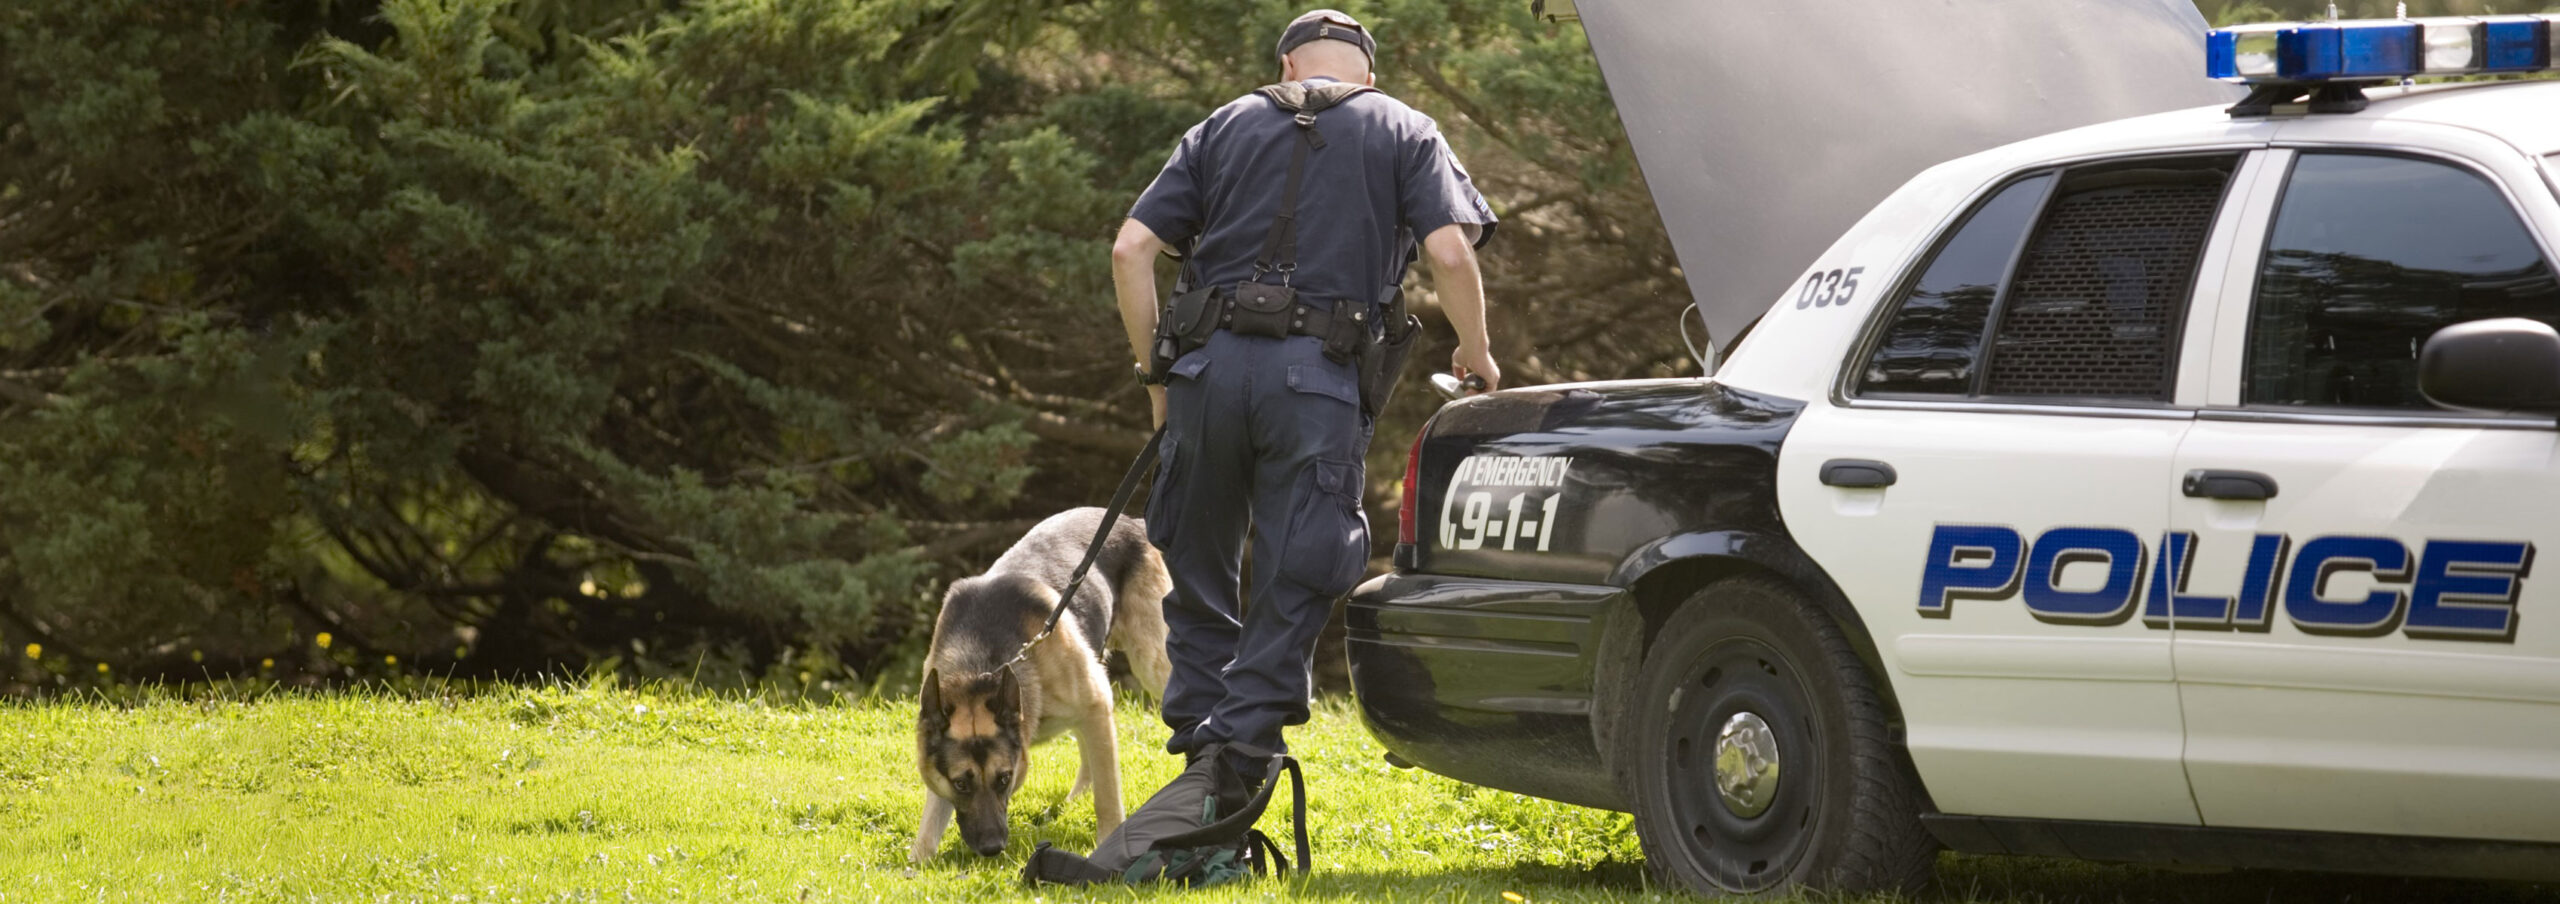 Policeman and police dog.